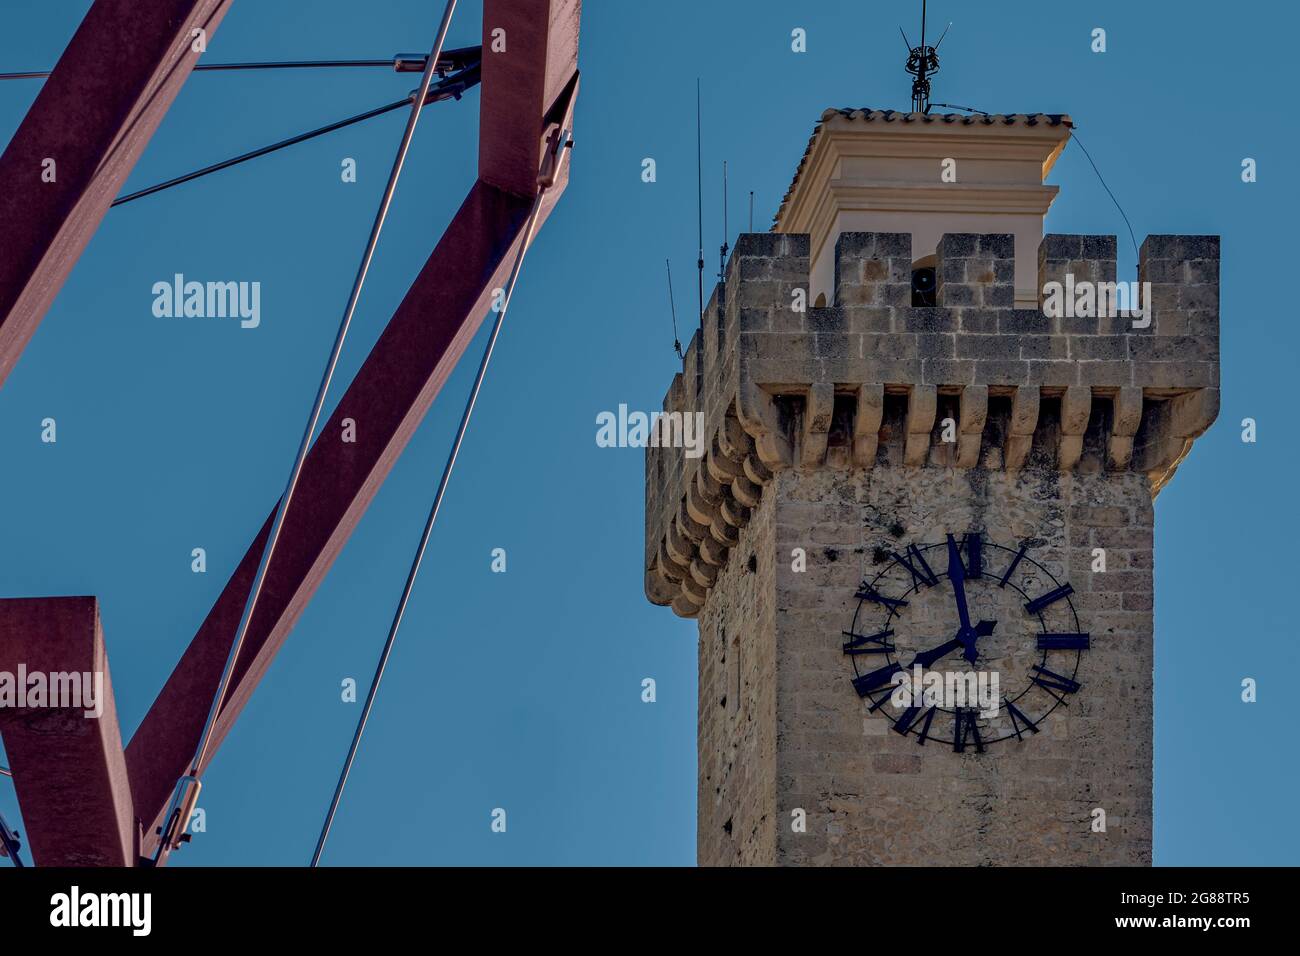 Tour Mangana du XVIe siècle, appelée 'Torre de las horas', horloge locale sur la place Mangana de la ville de Cuenca, Castille la Manche, Espagne. Banque D'Images